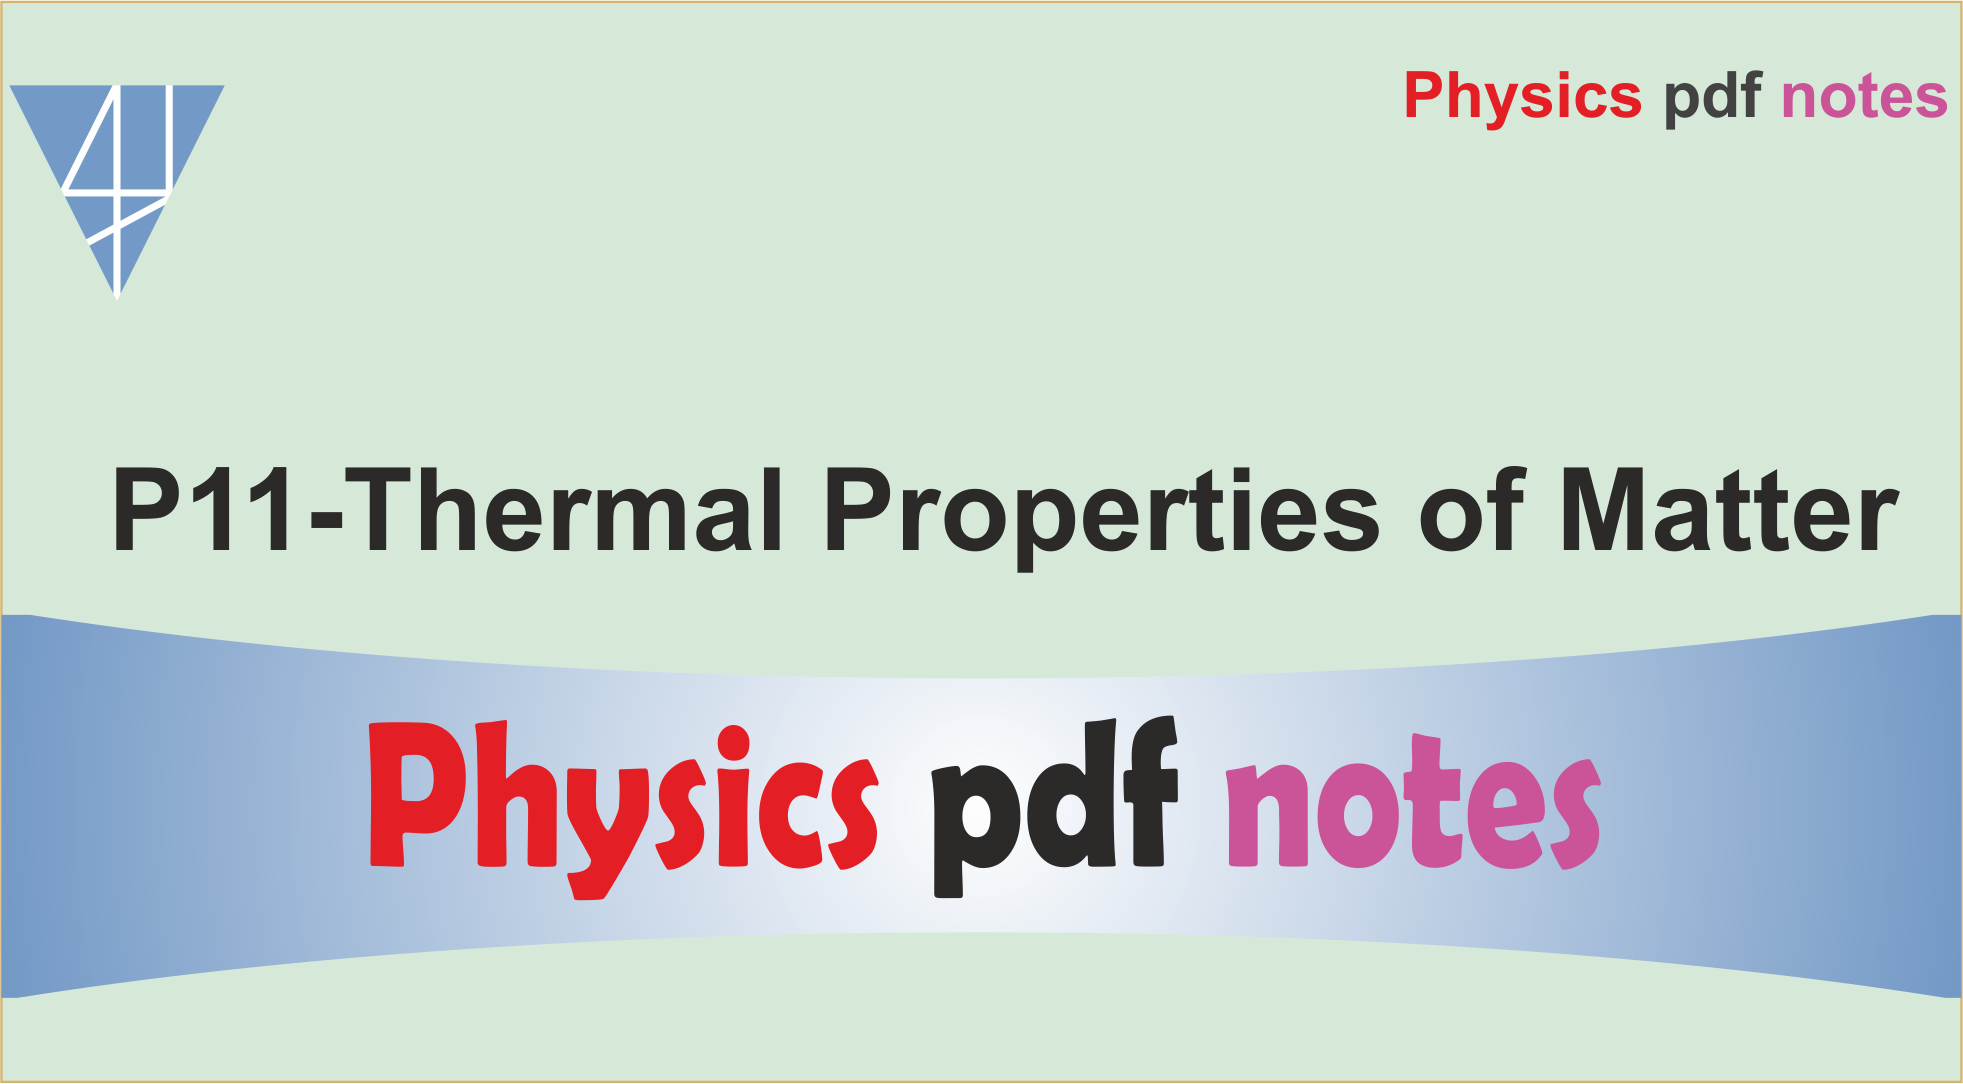 P11-Thermal Properties of Matter